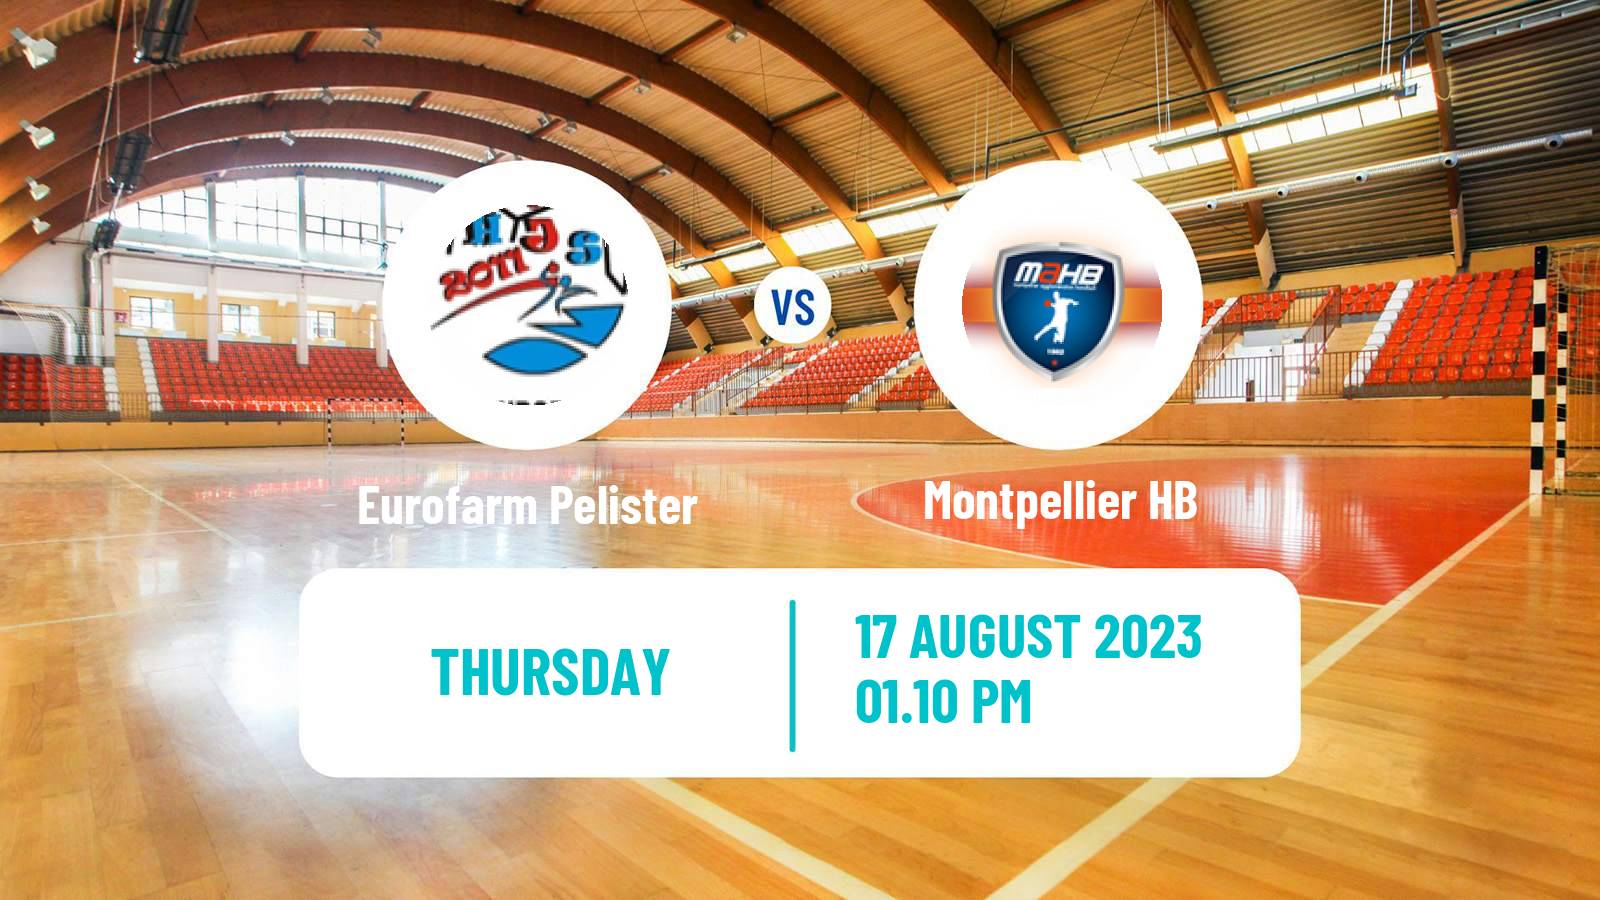 Handball Club Friendly Hanbdall Eurofarm Pelister - Montpellier HB